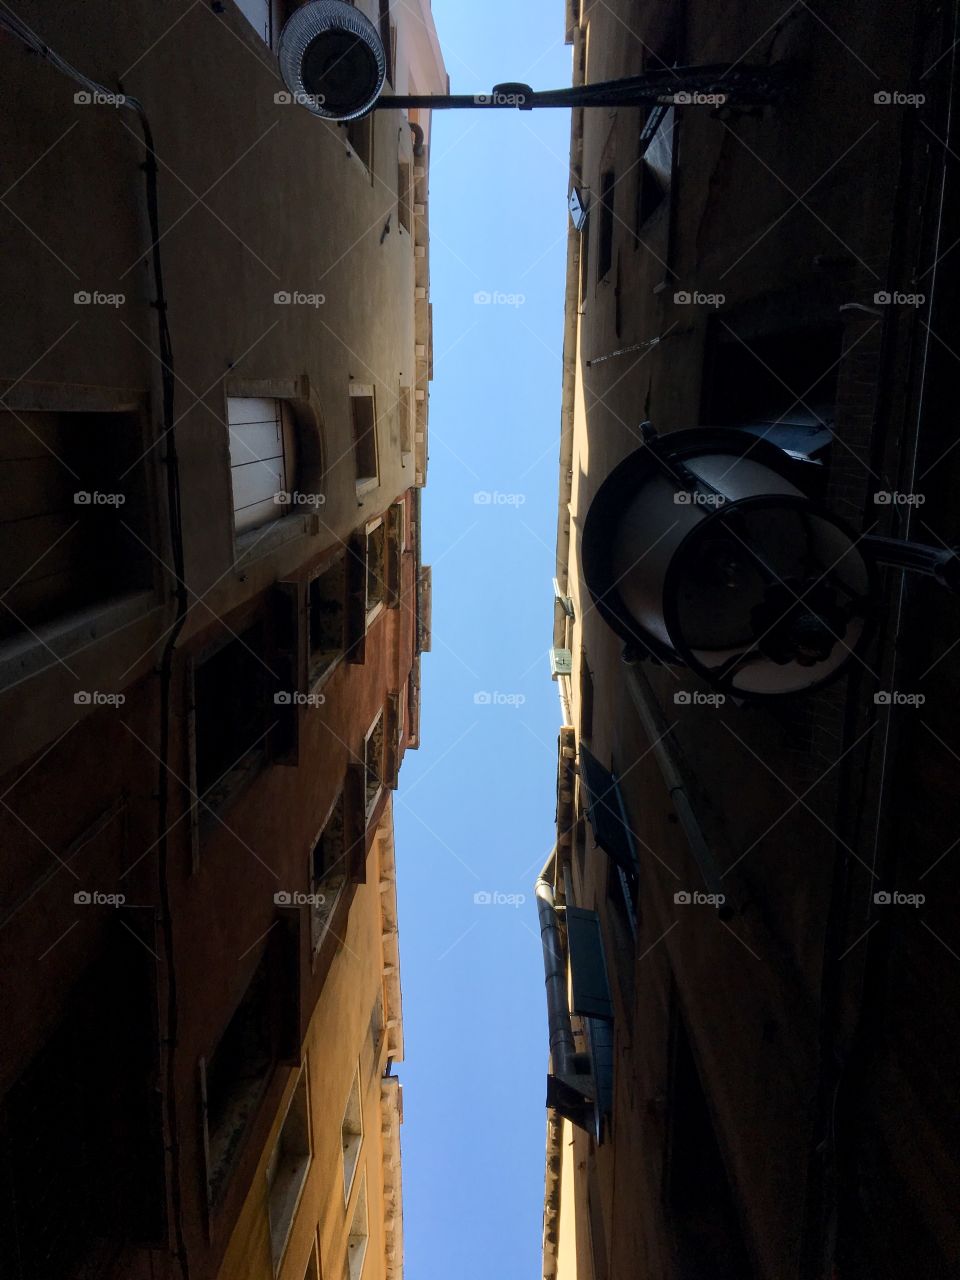 Sky between two buildings 